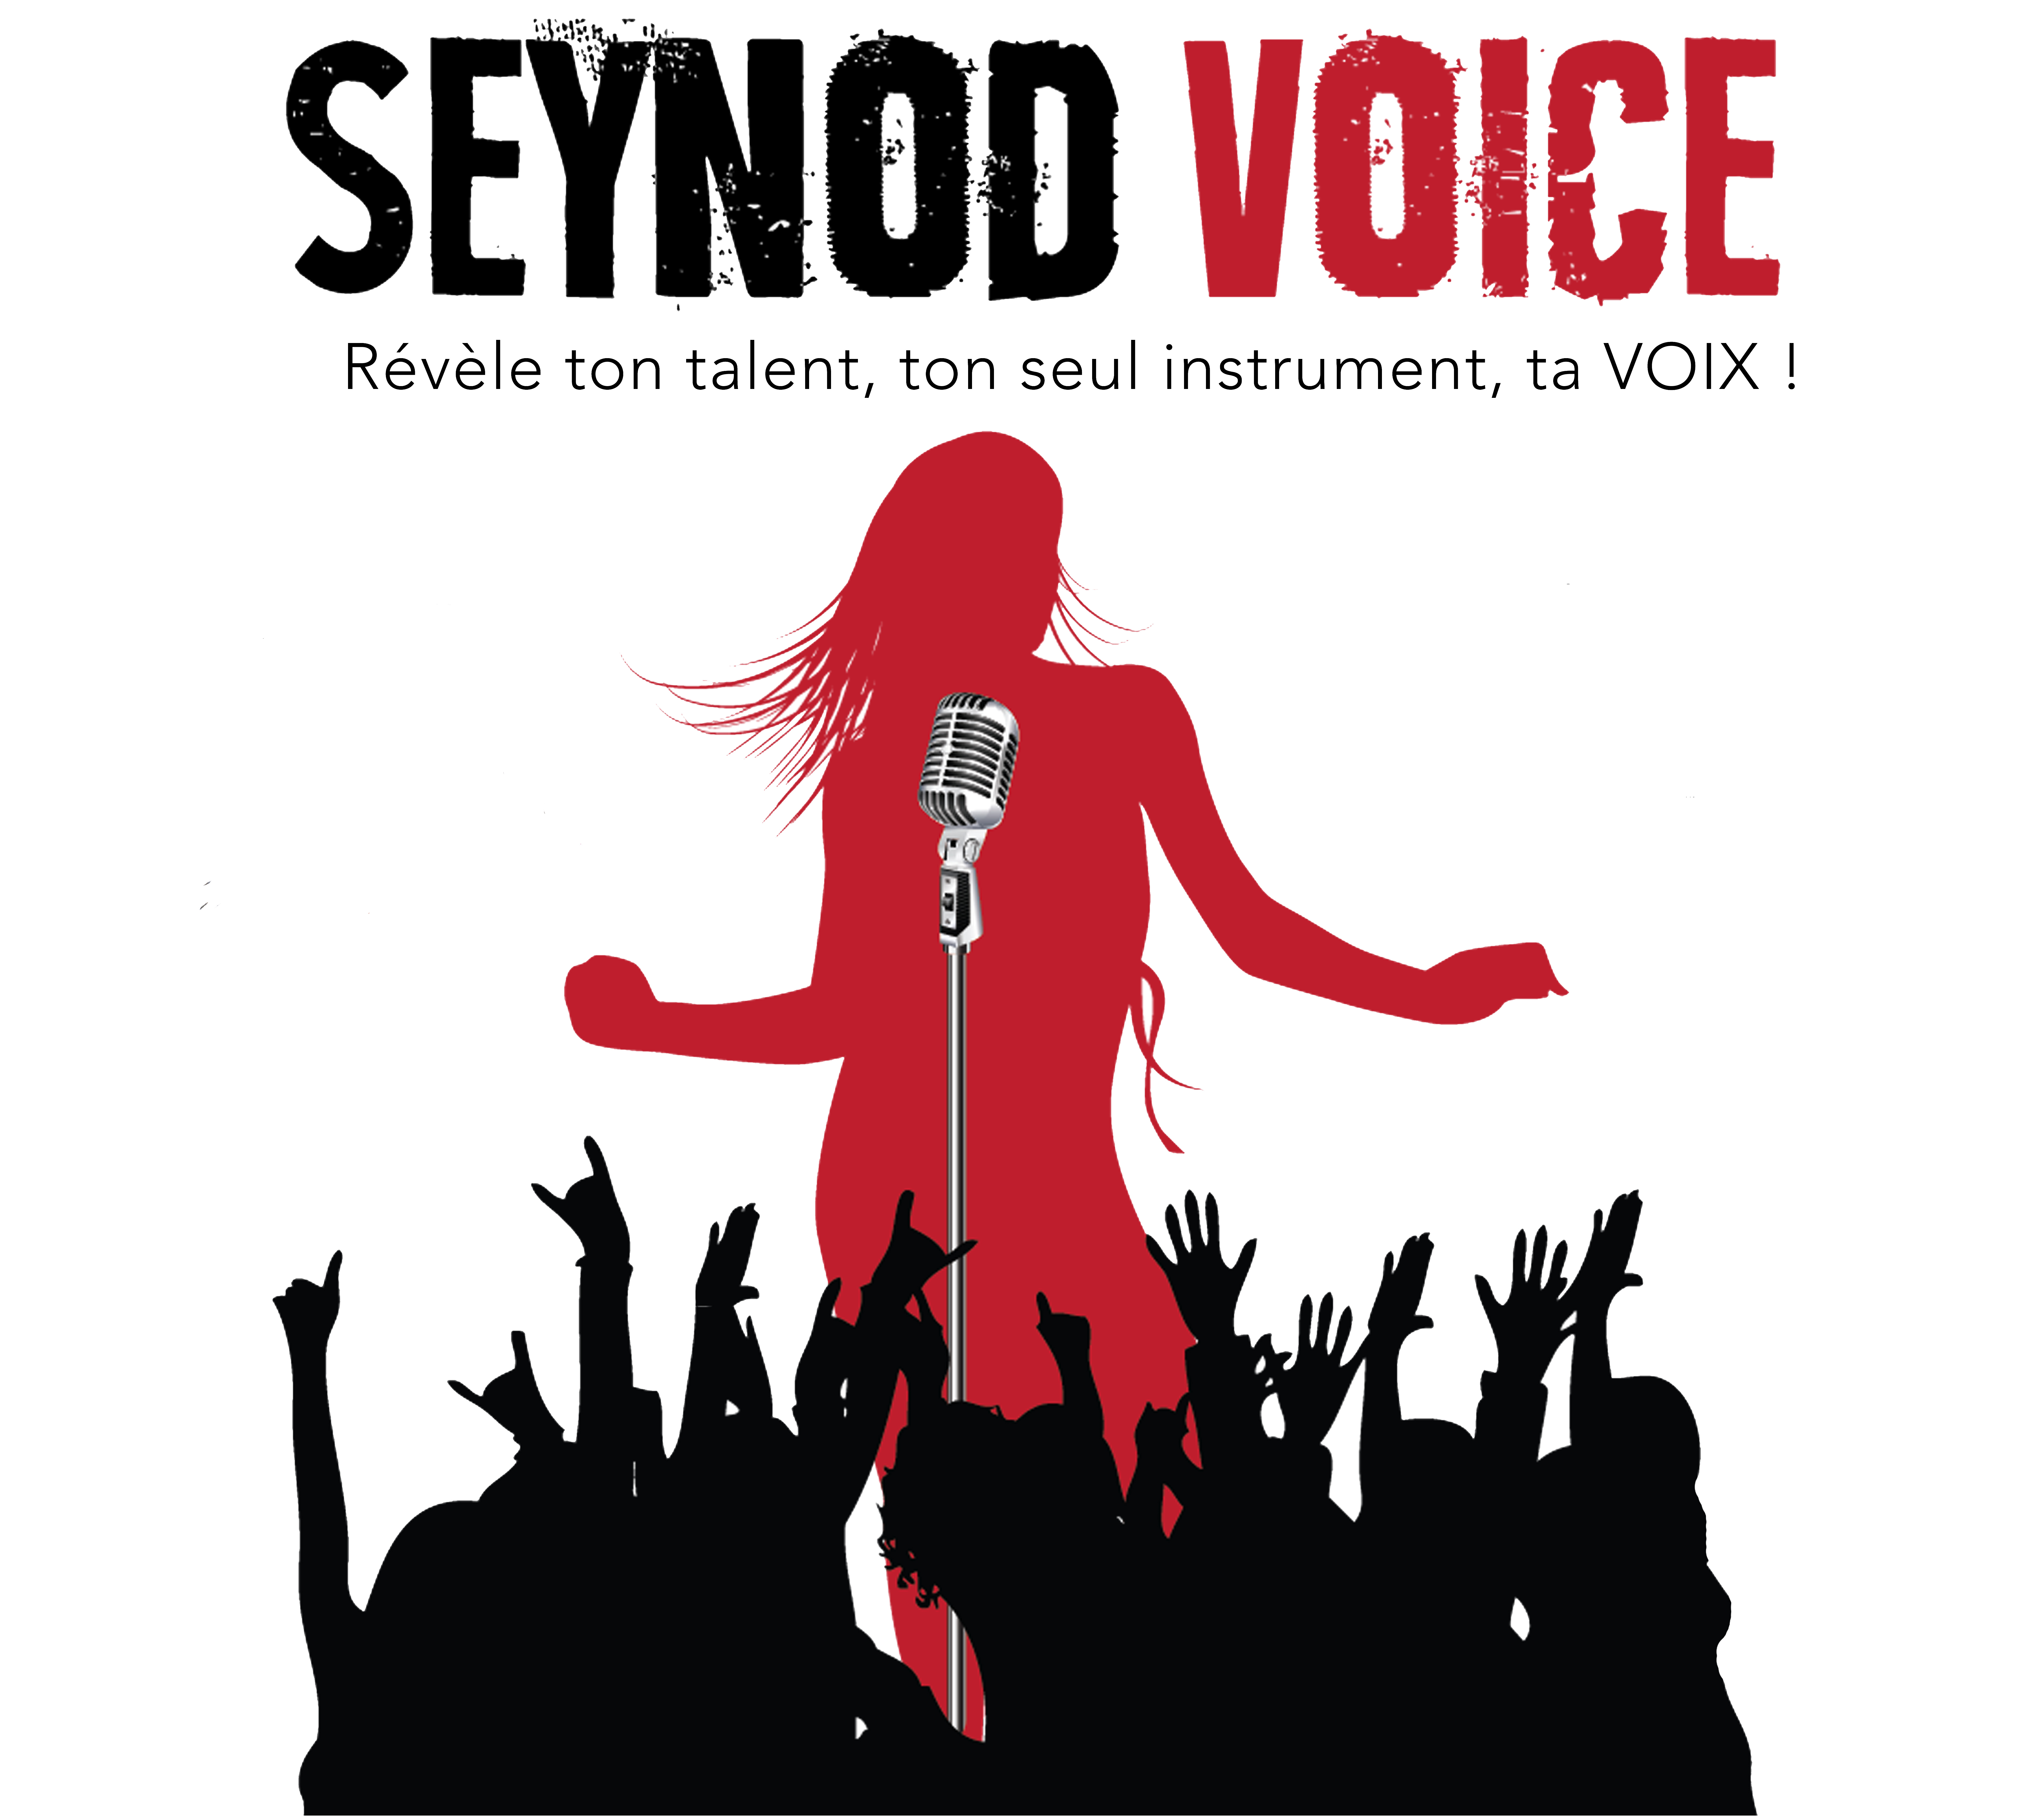 Seynod Voice 2016, top départ avec les sélections !